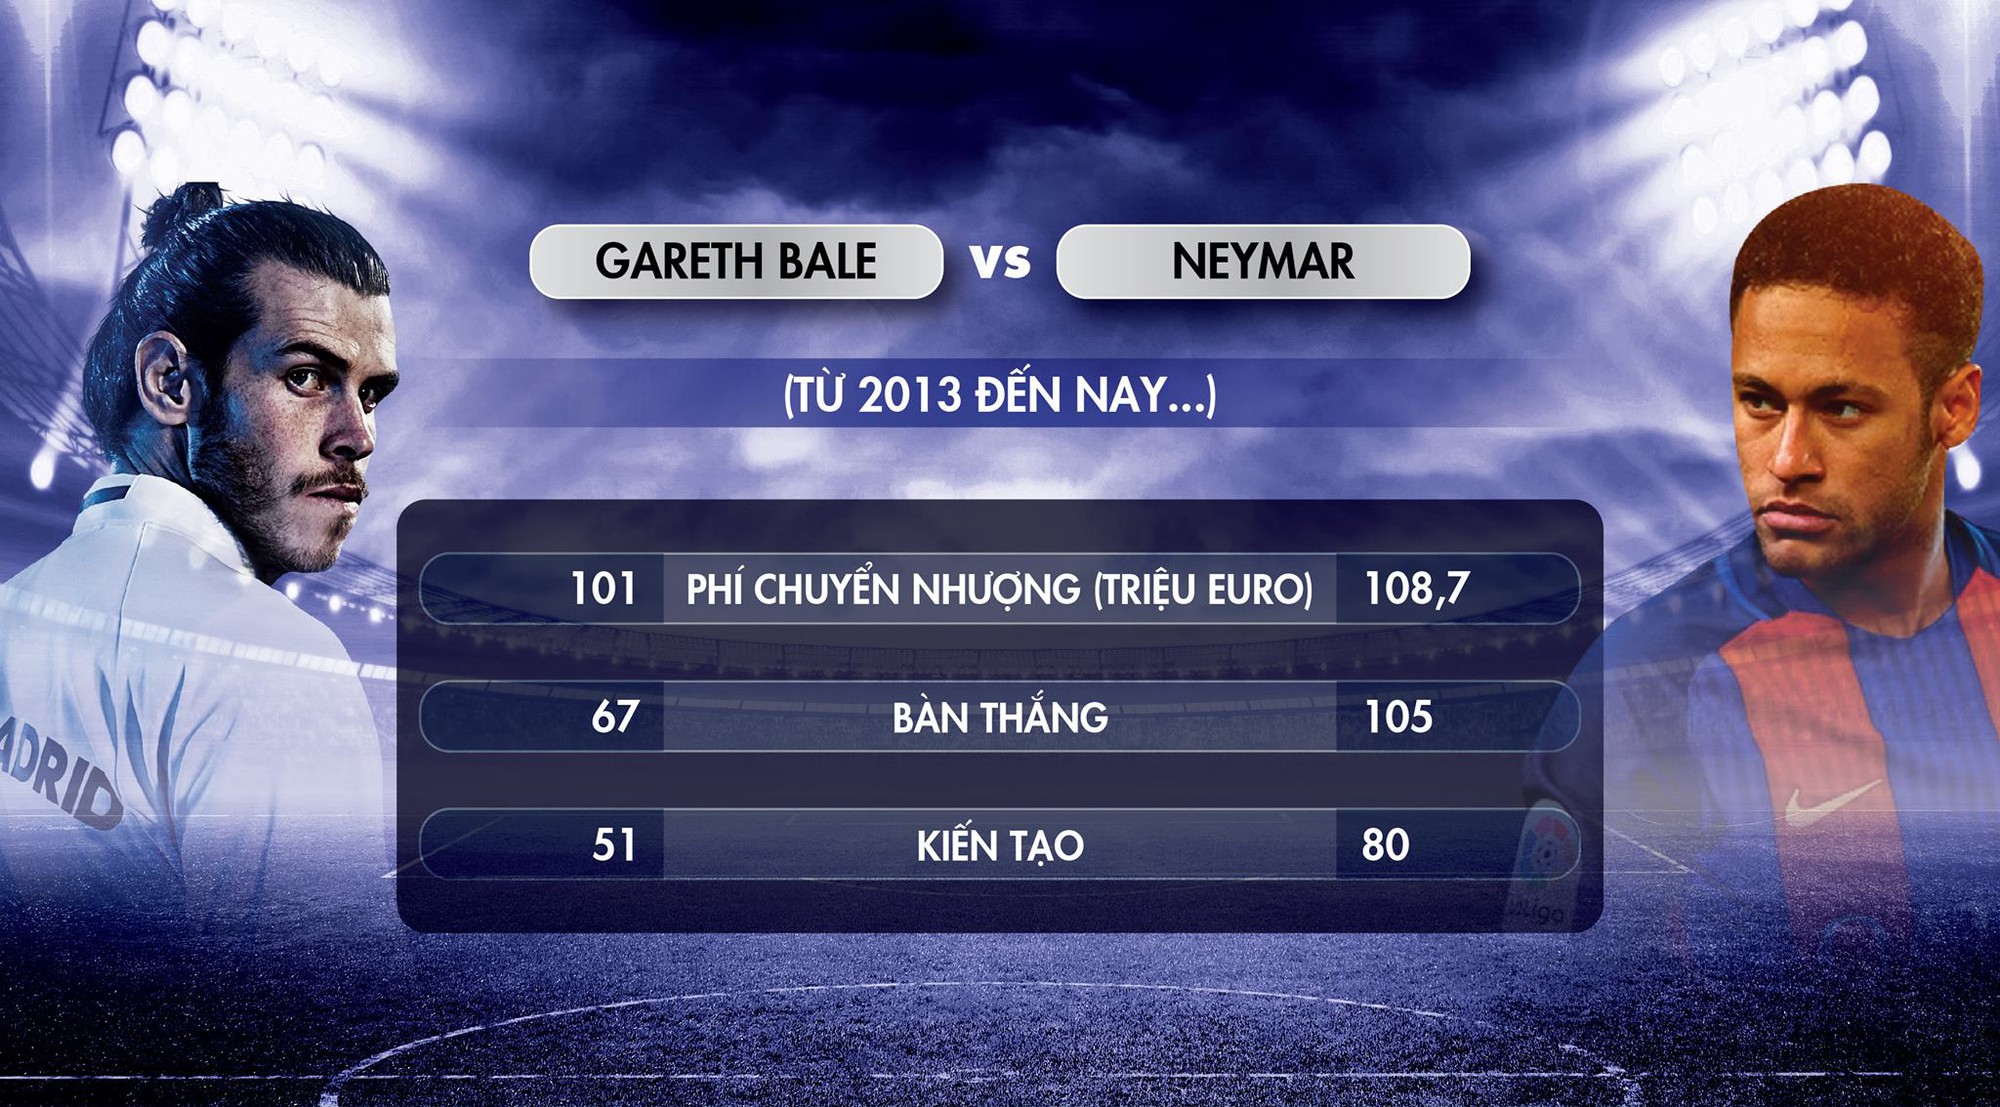 Neymar mới là món đầu tư hiệu quả, không phải Bale